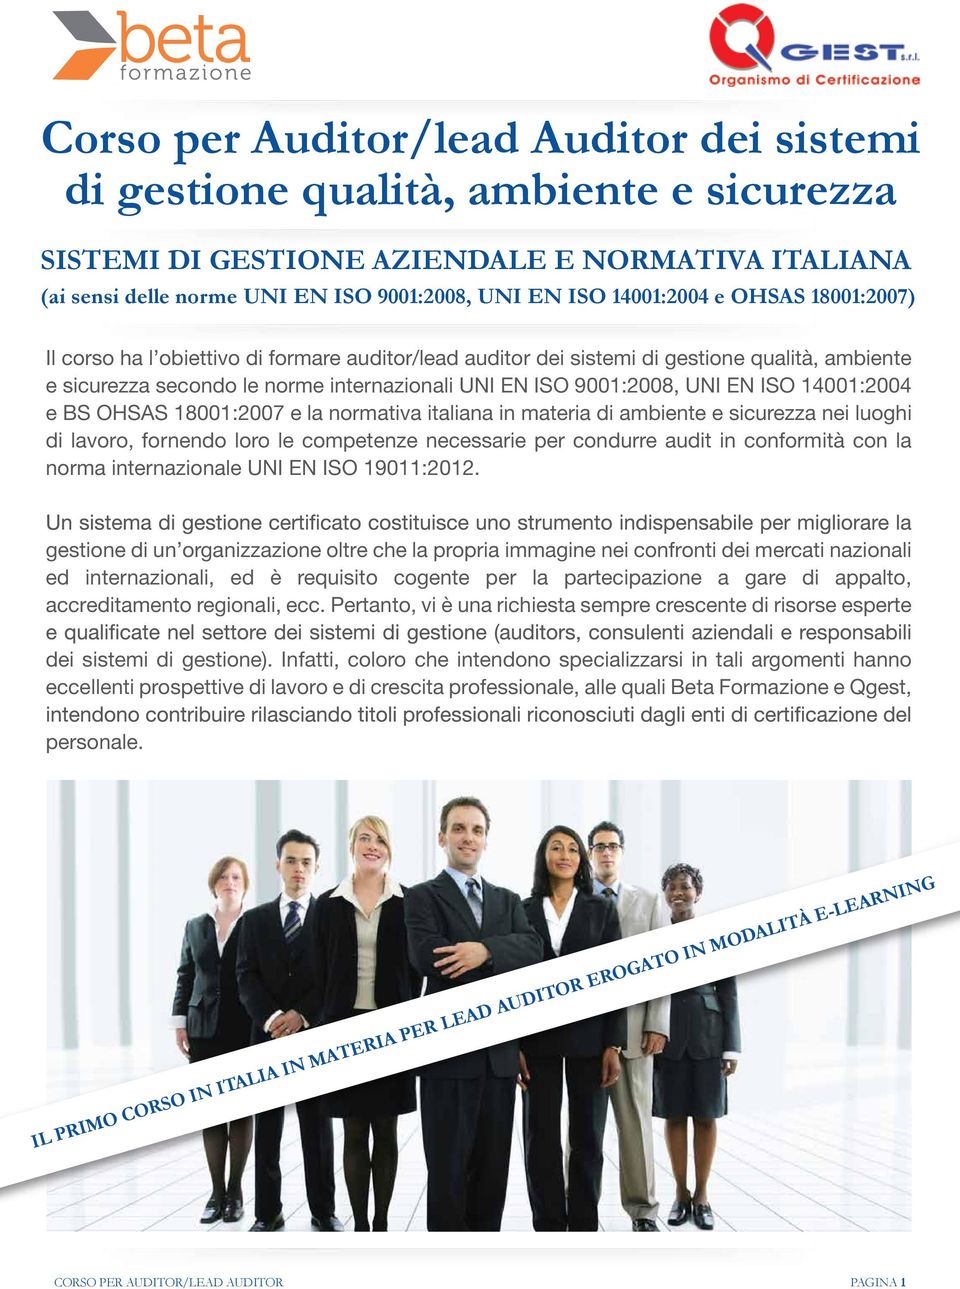 EN ISO 14001:2004 e BS OHSAS 18001:2007 e la normativa italiana in materia di ambiente e sicurezza nei luoghi di lavoro, fornendo loro le competenze necessarie per condurre audit in conformità con la